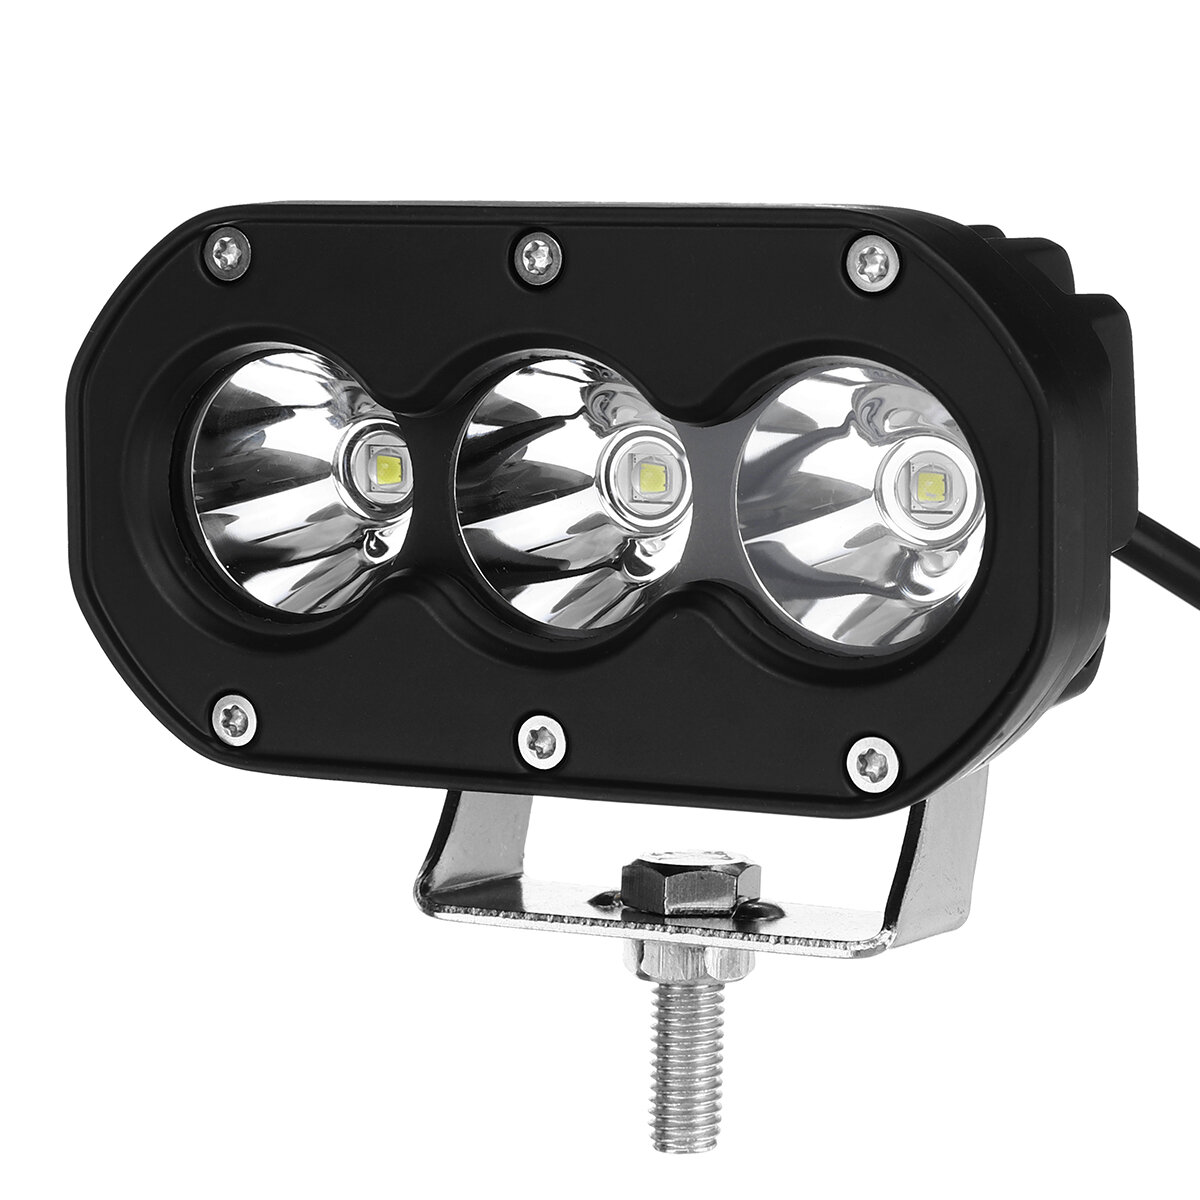 10V-30V 3.5 Inch 60W LED Work Light Bar Spot Beam White Light For Cars Motorcycle Offroad SUV